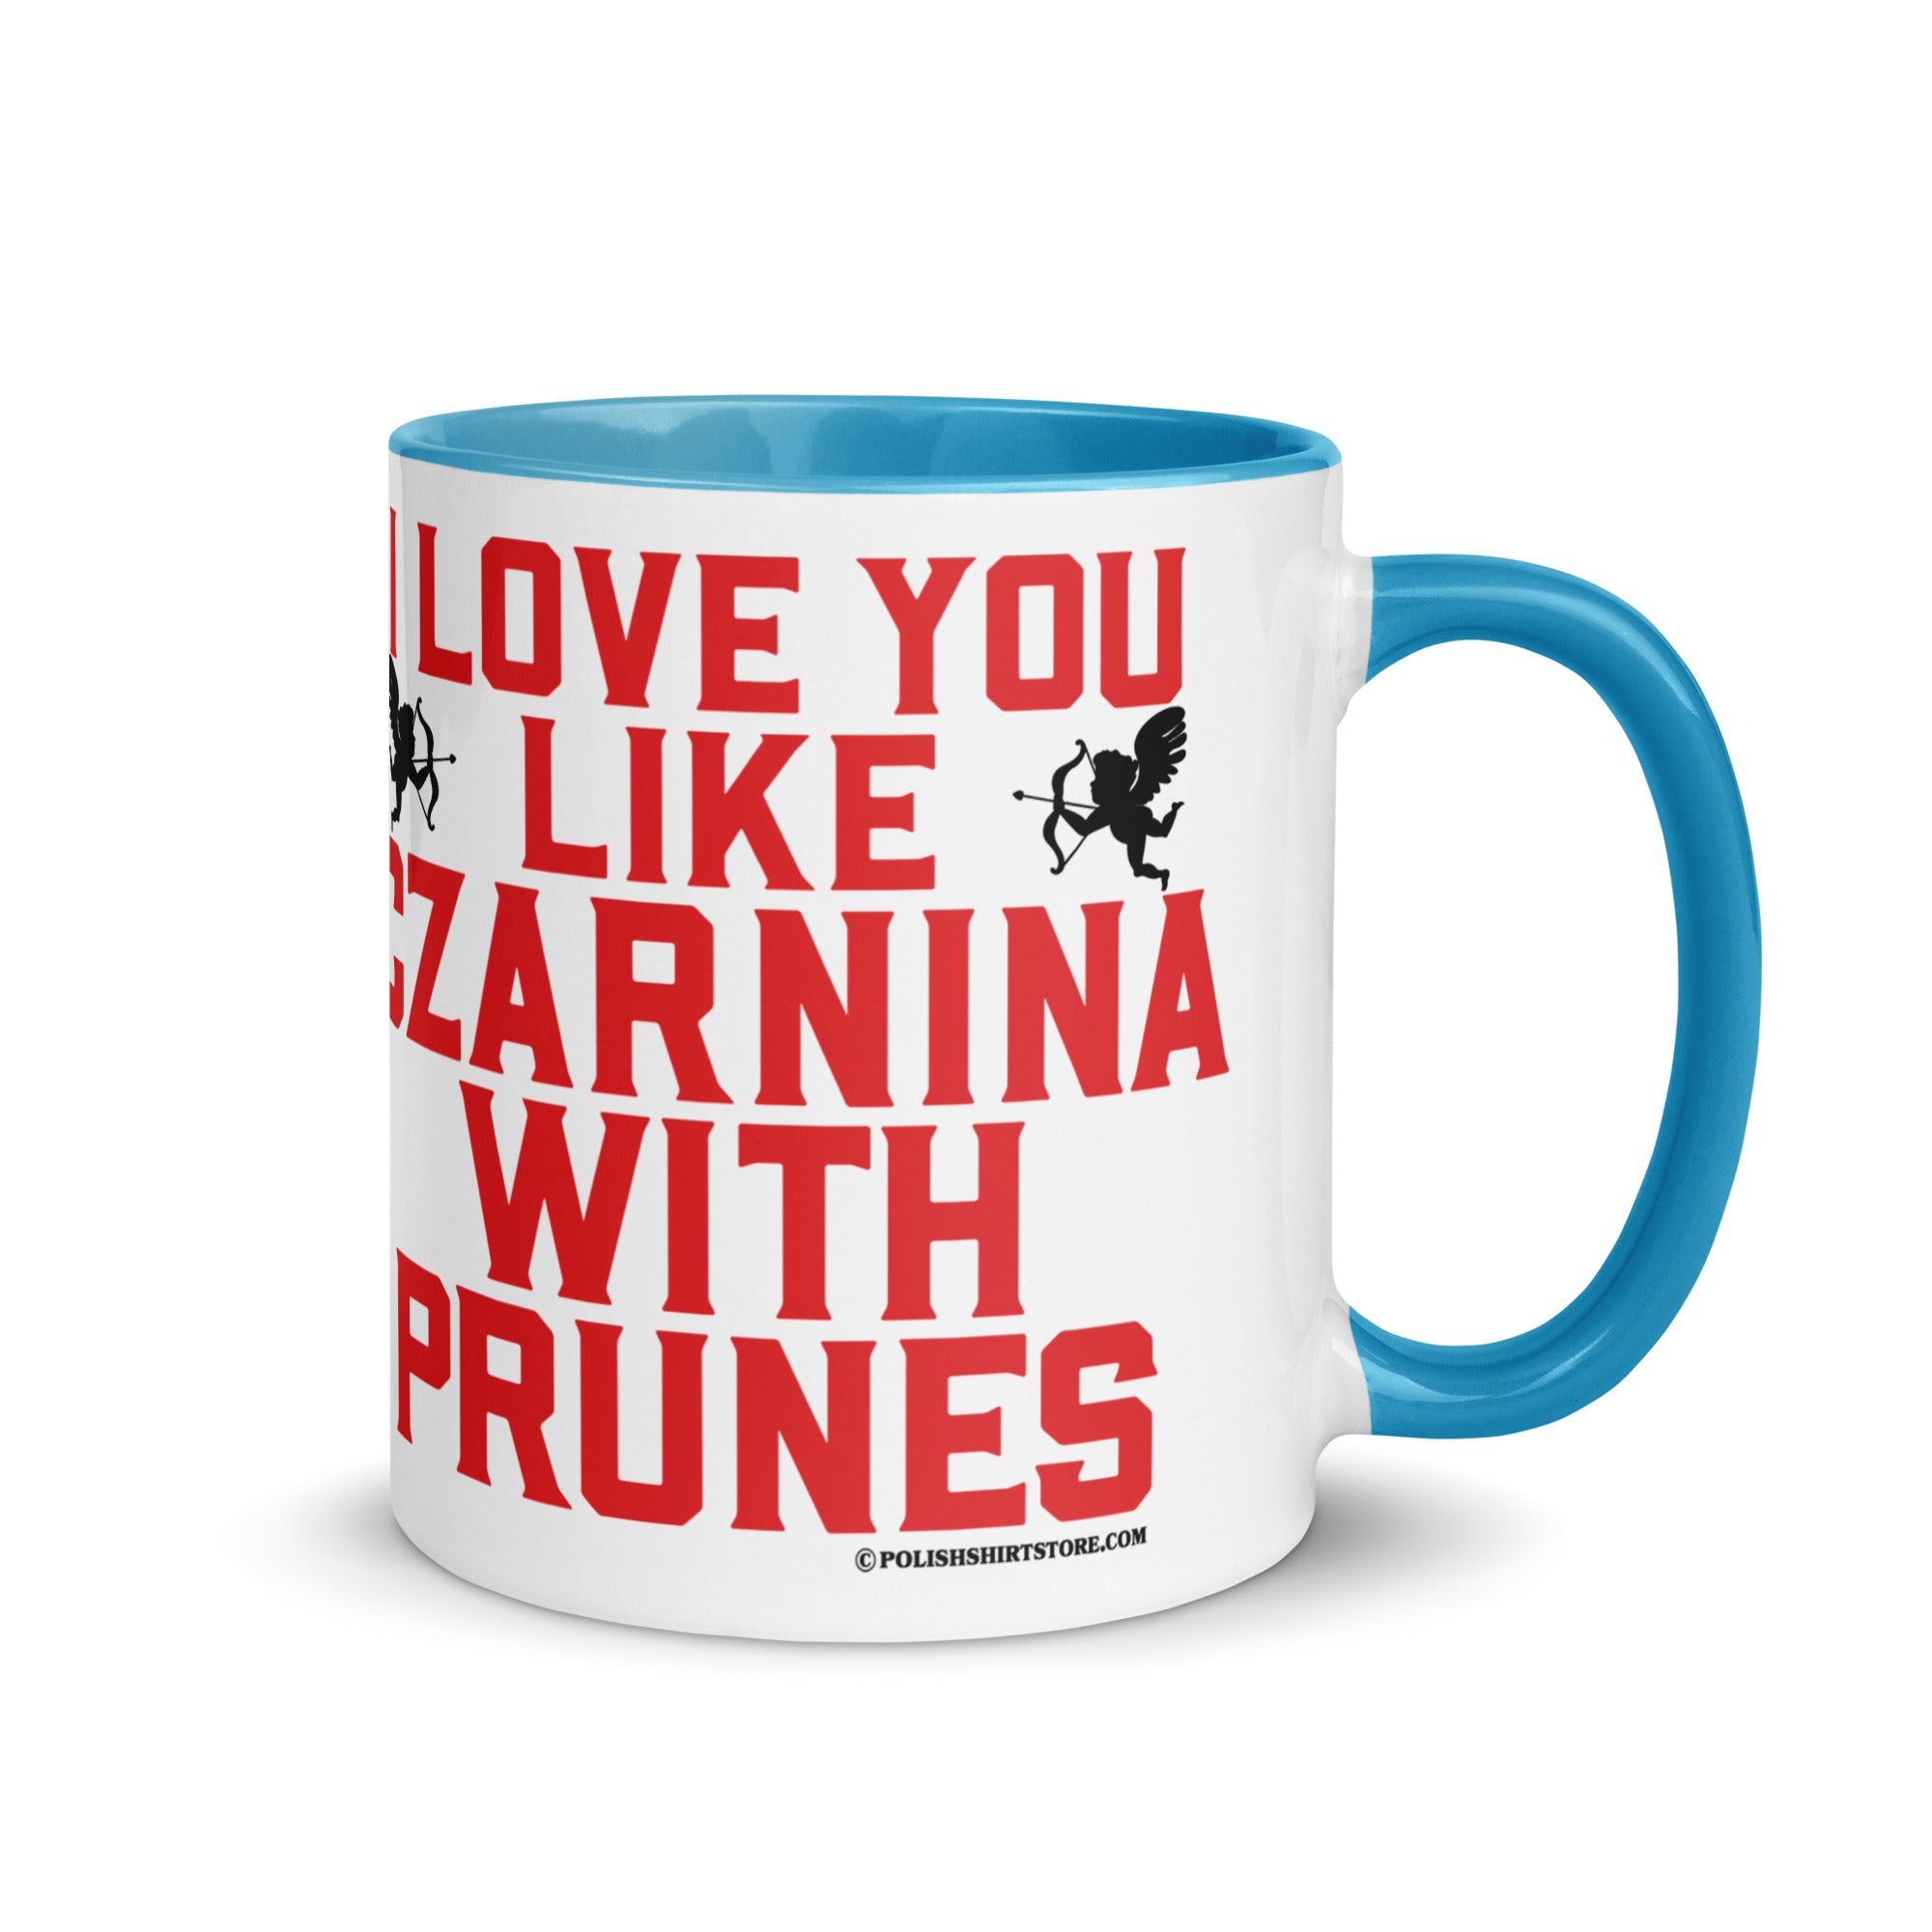 I Love You Like Czarnina With Prunes Coffee Mug with Color Inside  Polish Shirt Store Blue 11 oz 